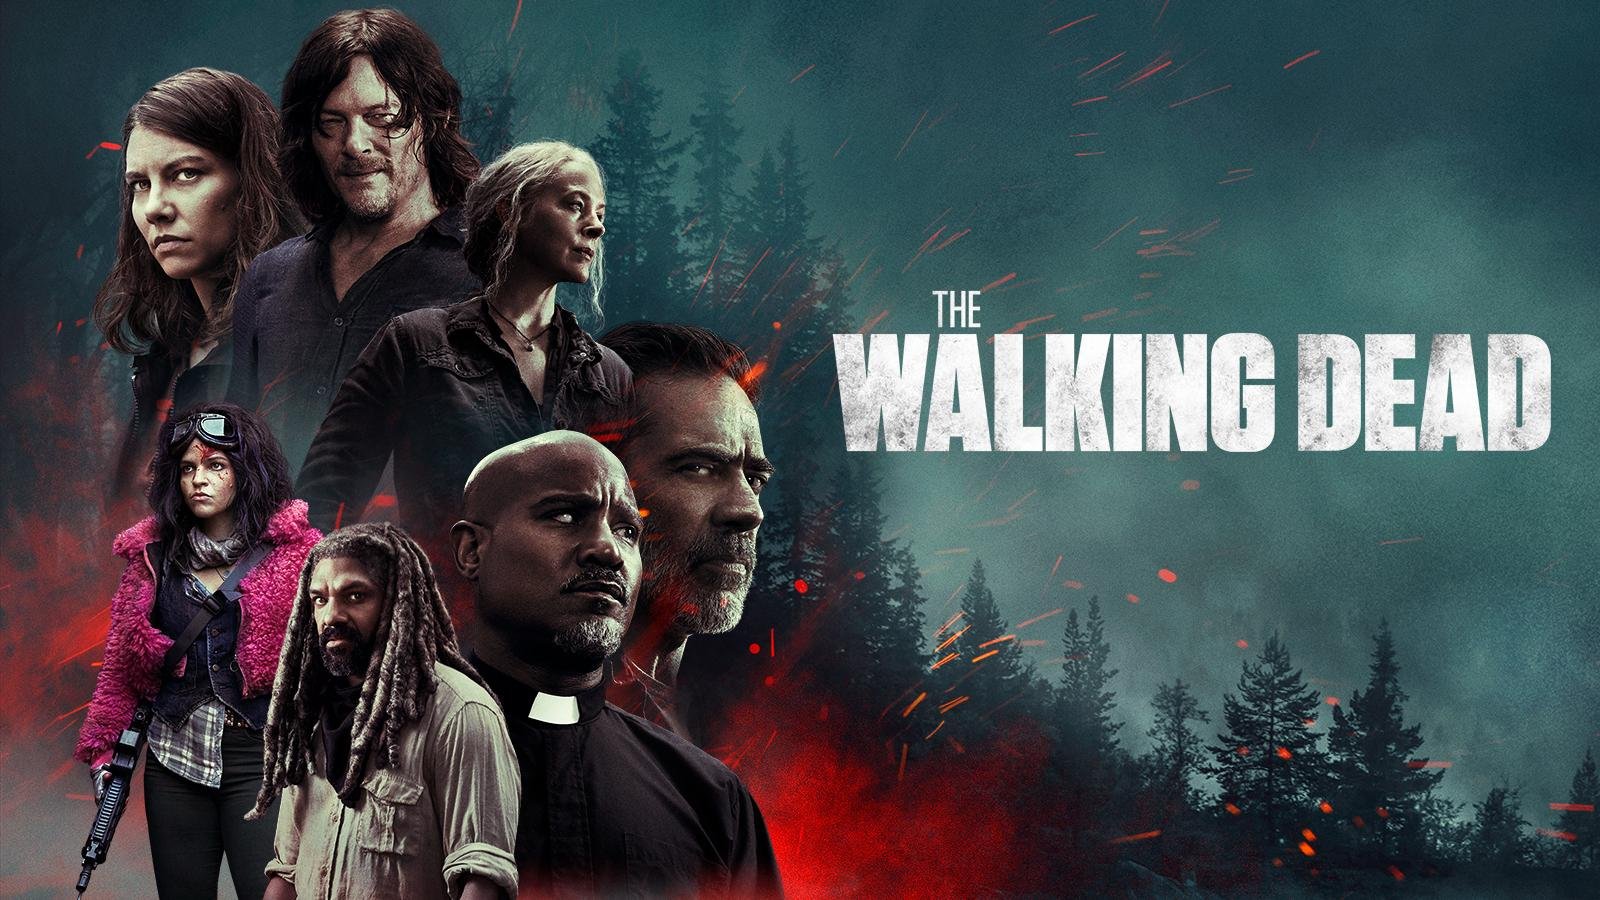 ramp spannend schandaal Watch The Walking Dead Online - Stream Full Episodes